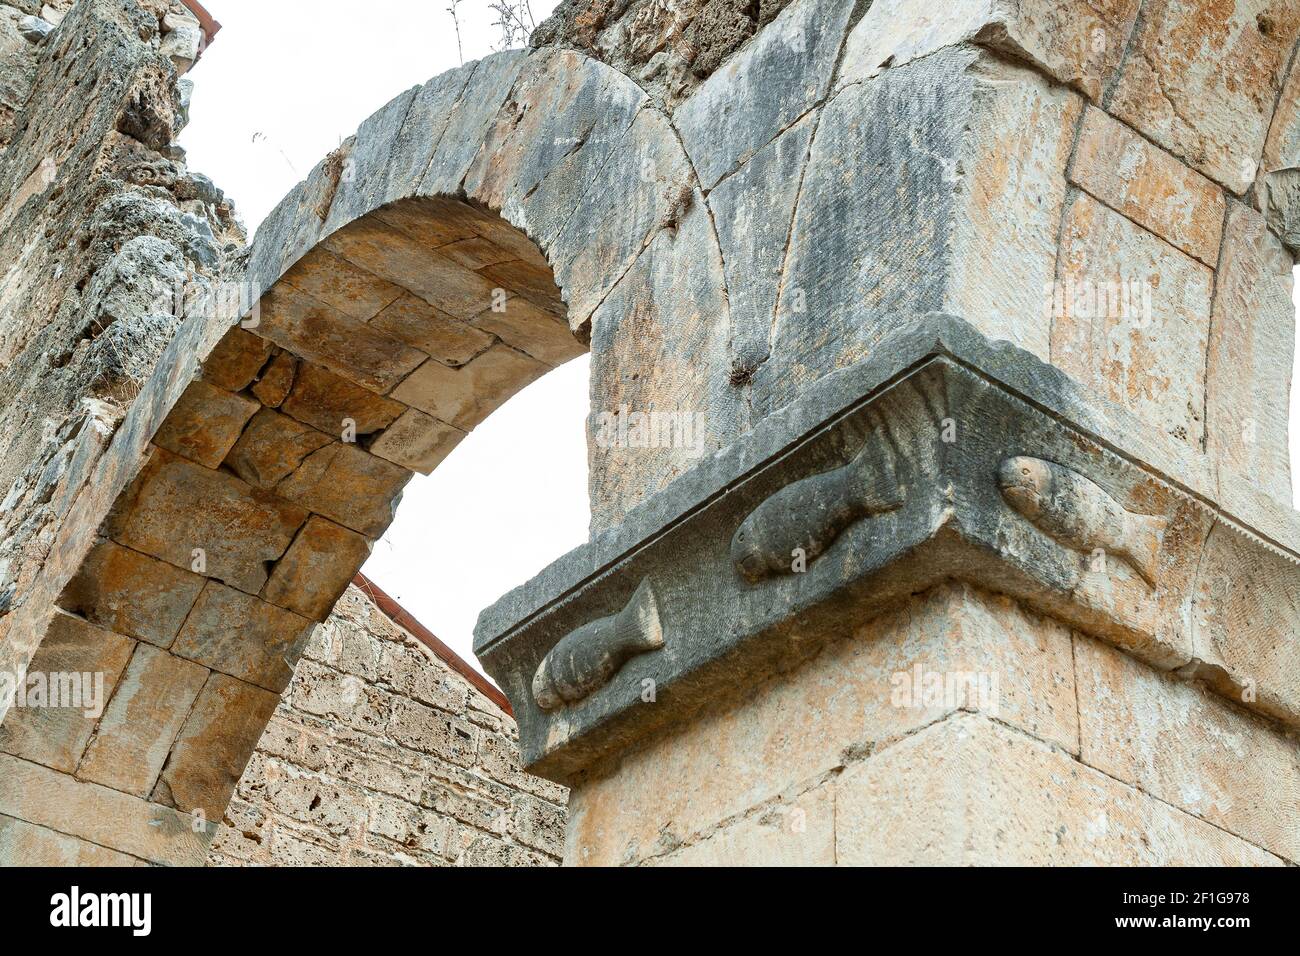 Antica chiesa in rovina. Su una colonna dell'antico segno cristiano del pesce. Bussi sul Tirino, provincia di Pescara, Abruzzo, Italia Foto Stock